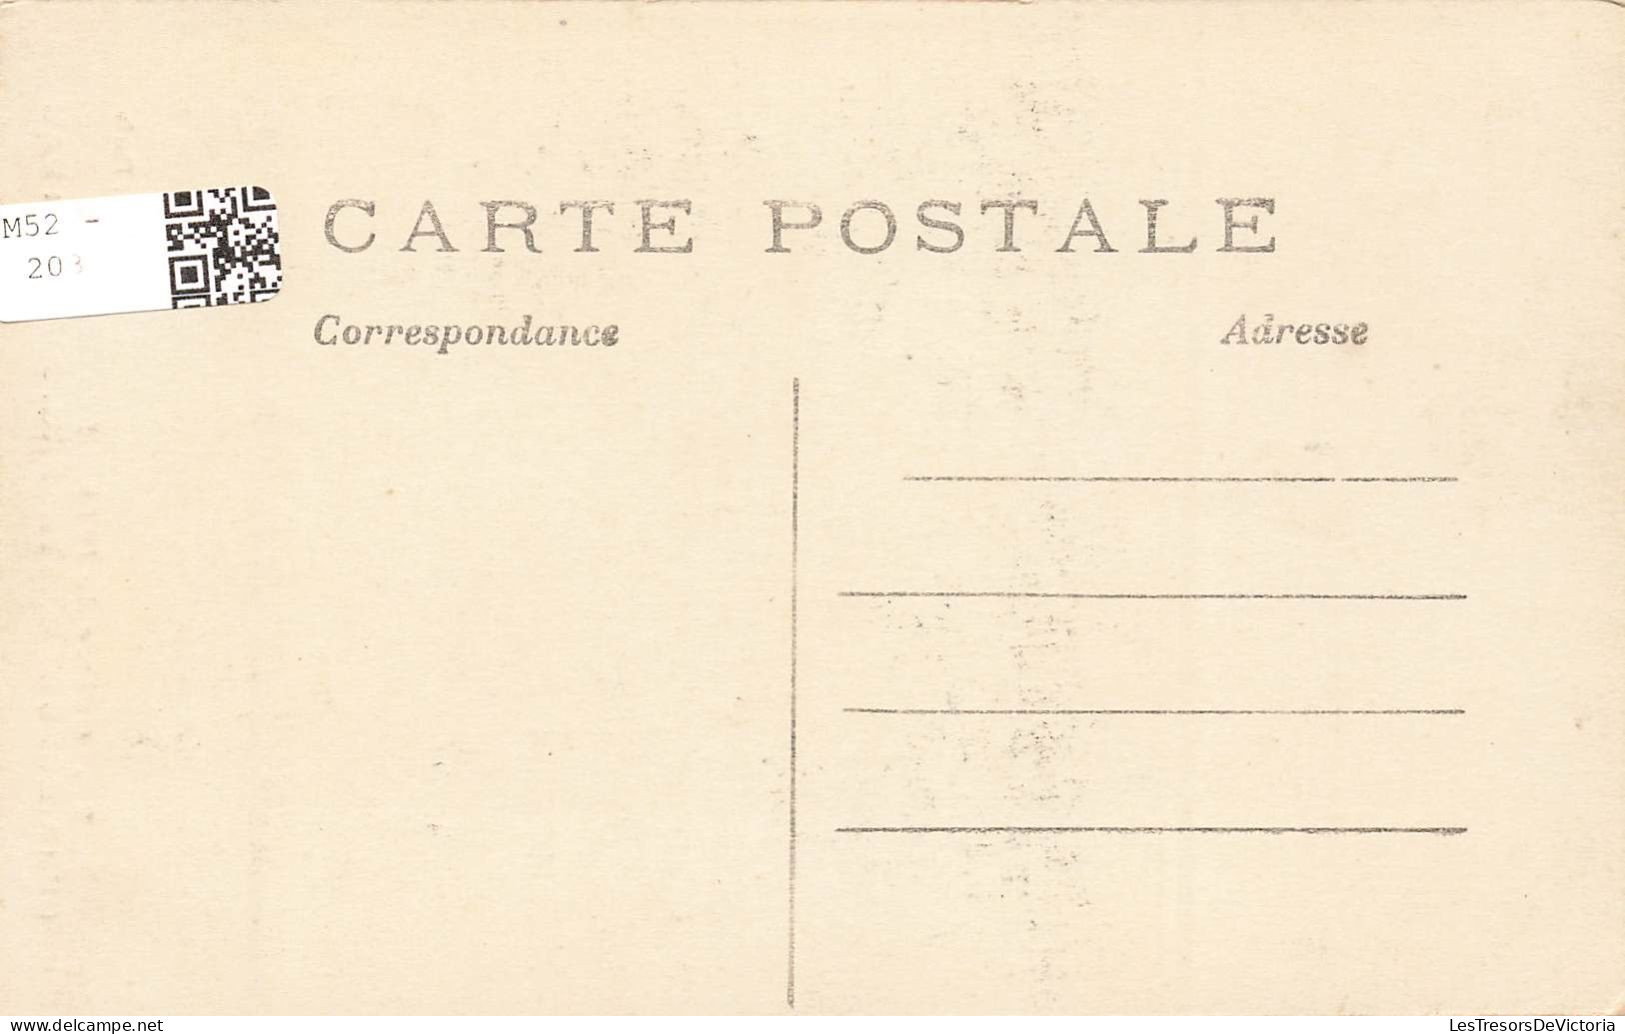 MILITARIA - Guerre De 1914 - Les Généraux Currières De Castelnau. Joffre Et Pau - Animé - Carte Postale Ancienne - Personen